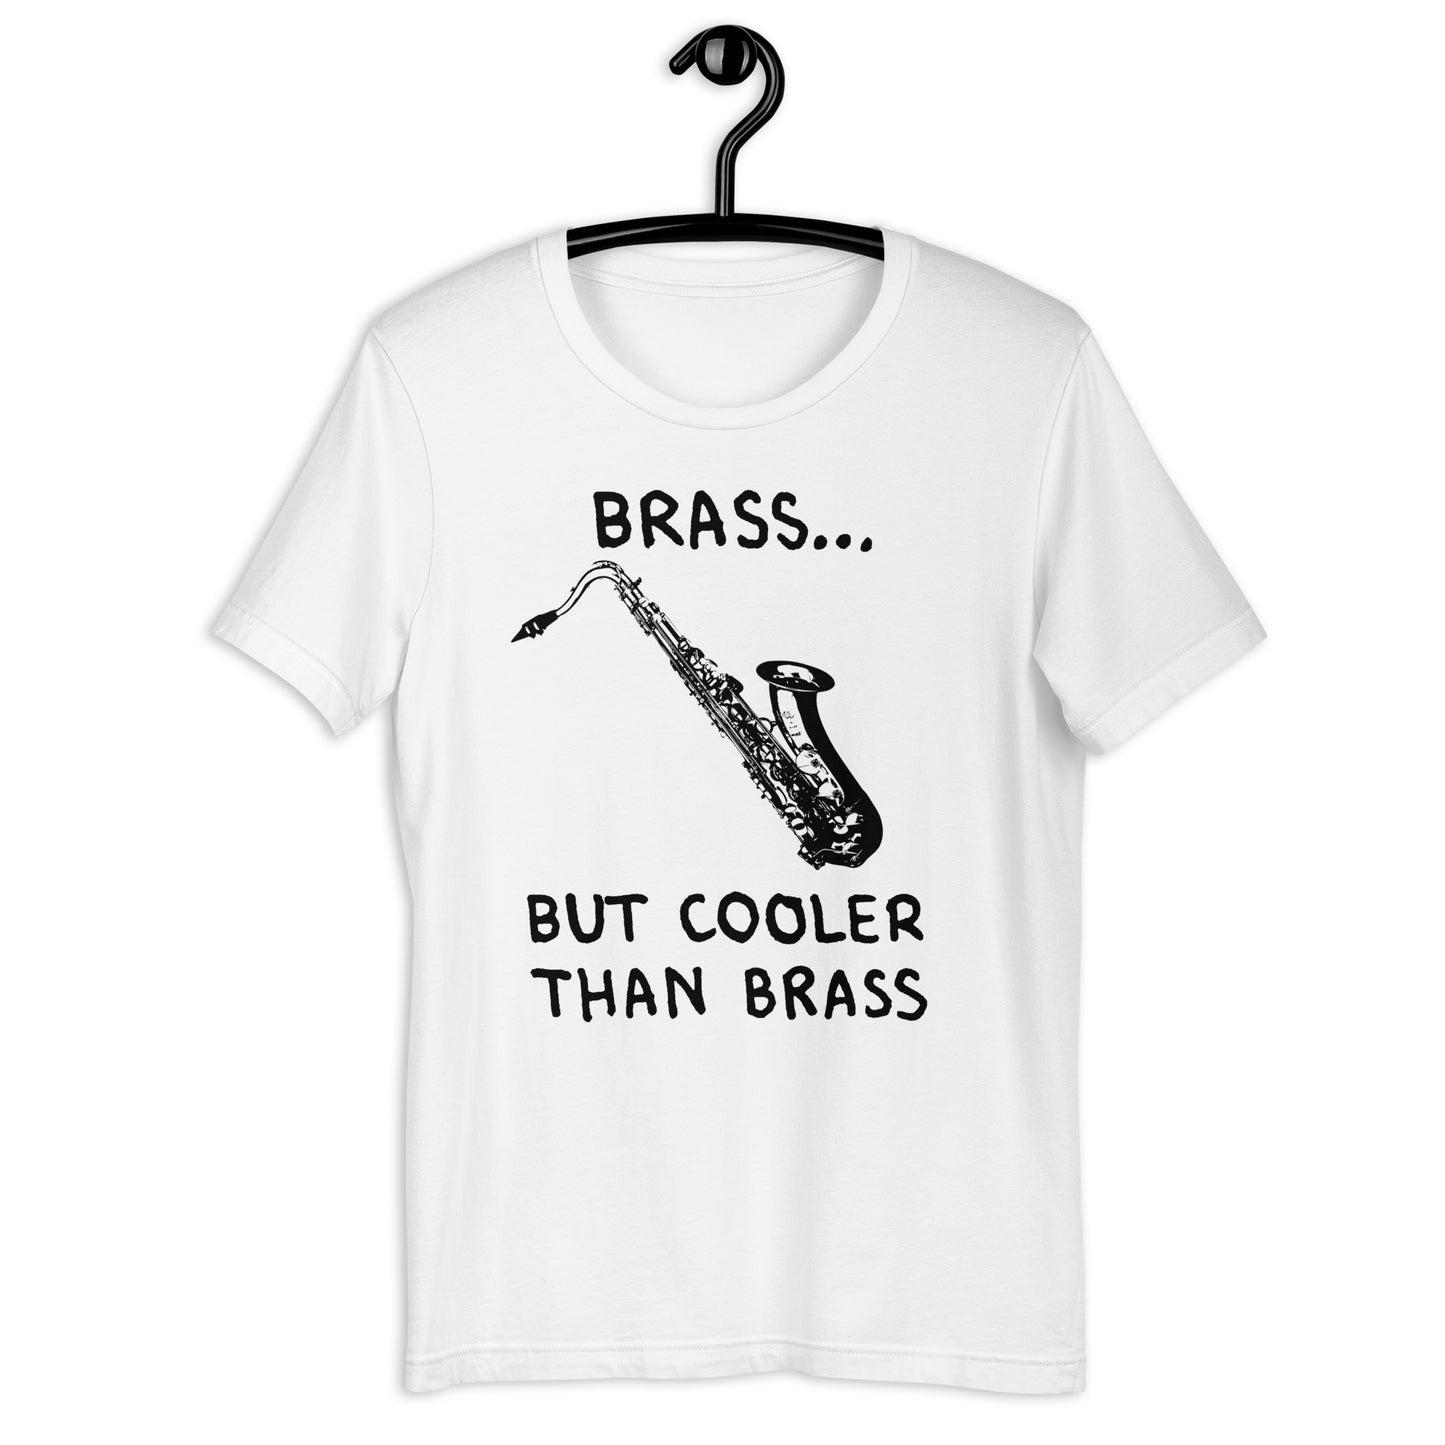 Cooler Than Brass Shirt